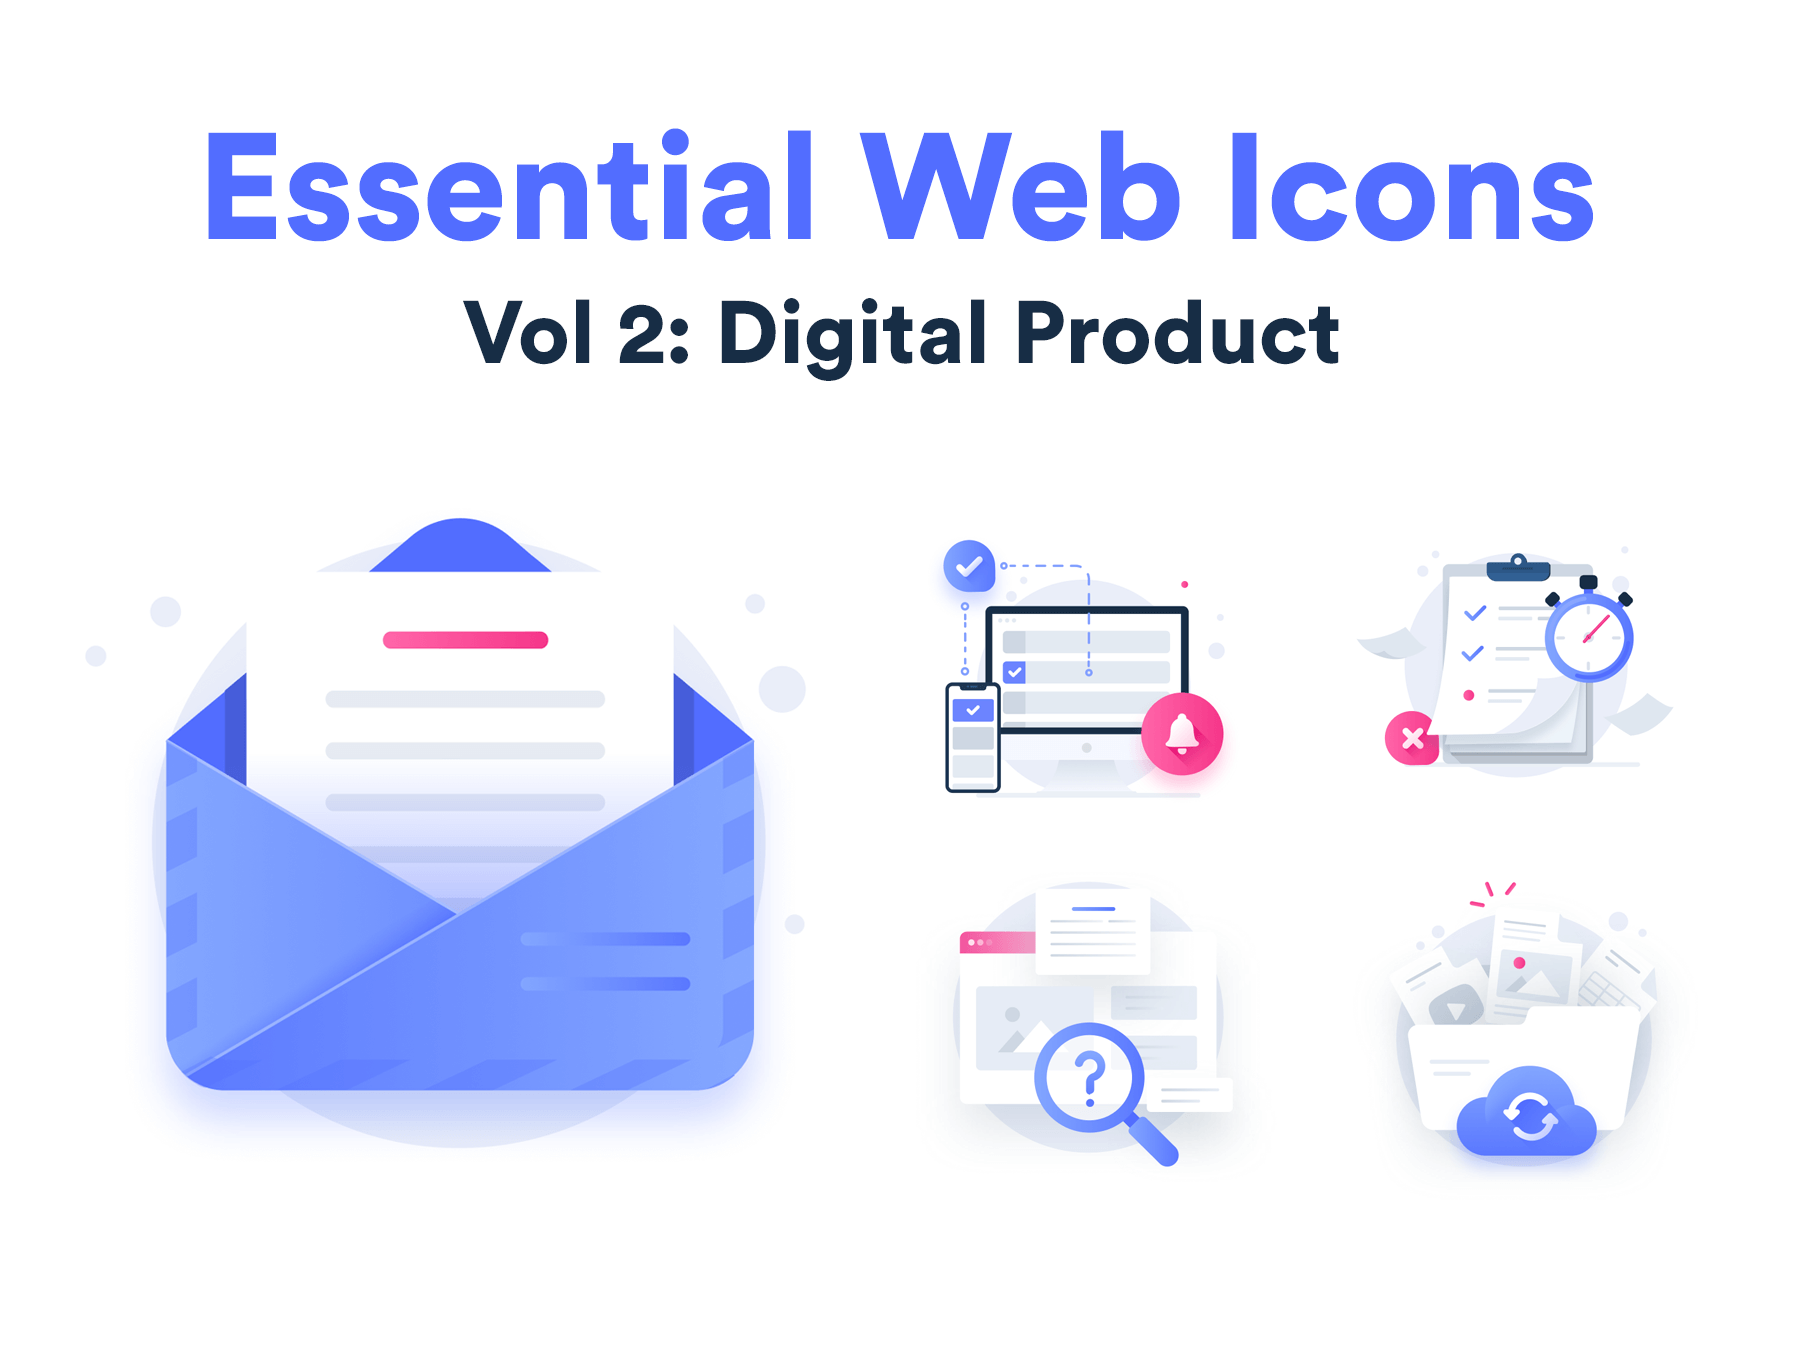 互联网概念概念化插图空状态插图模板素材Essential Web Icons Volume 2插图